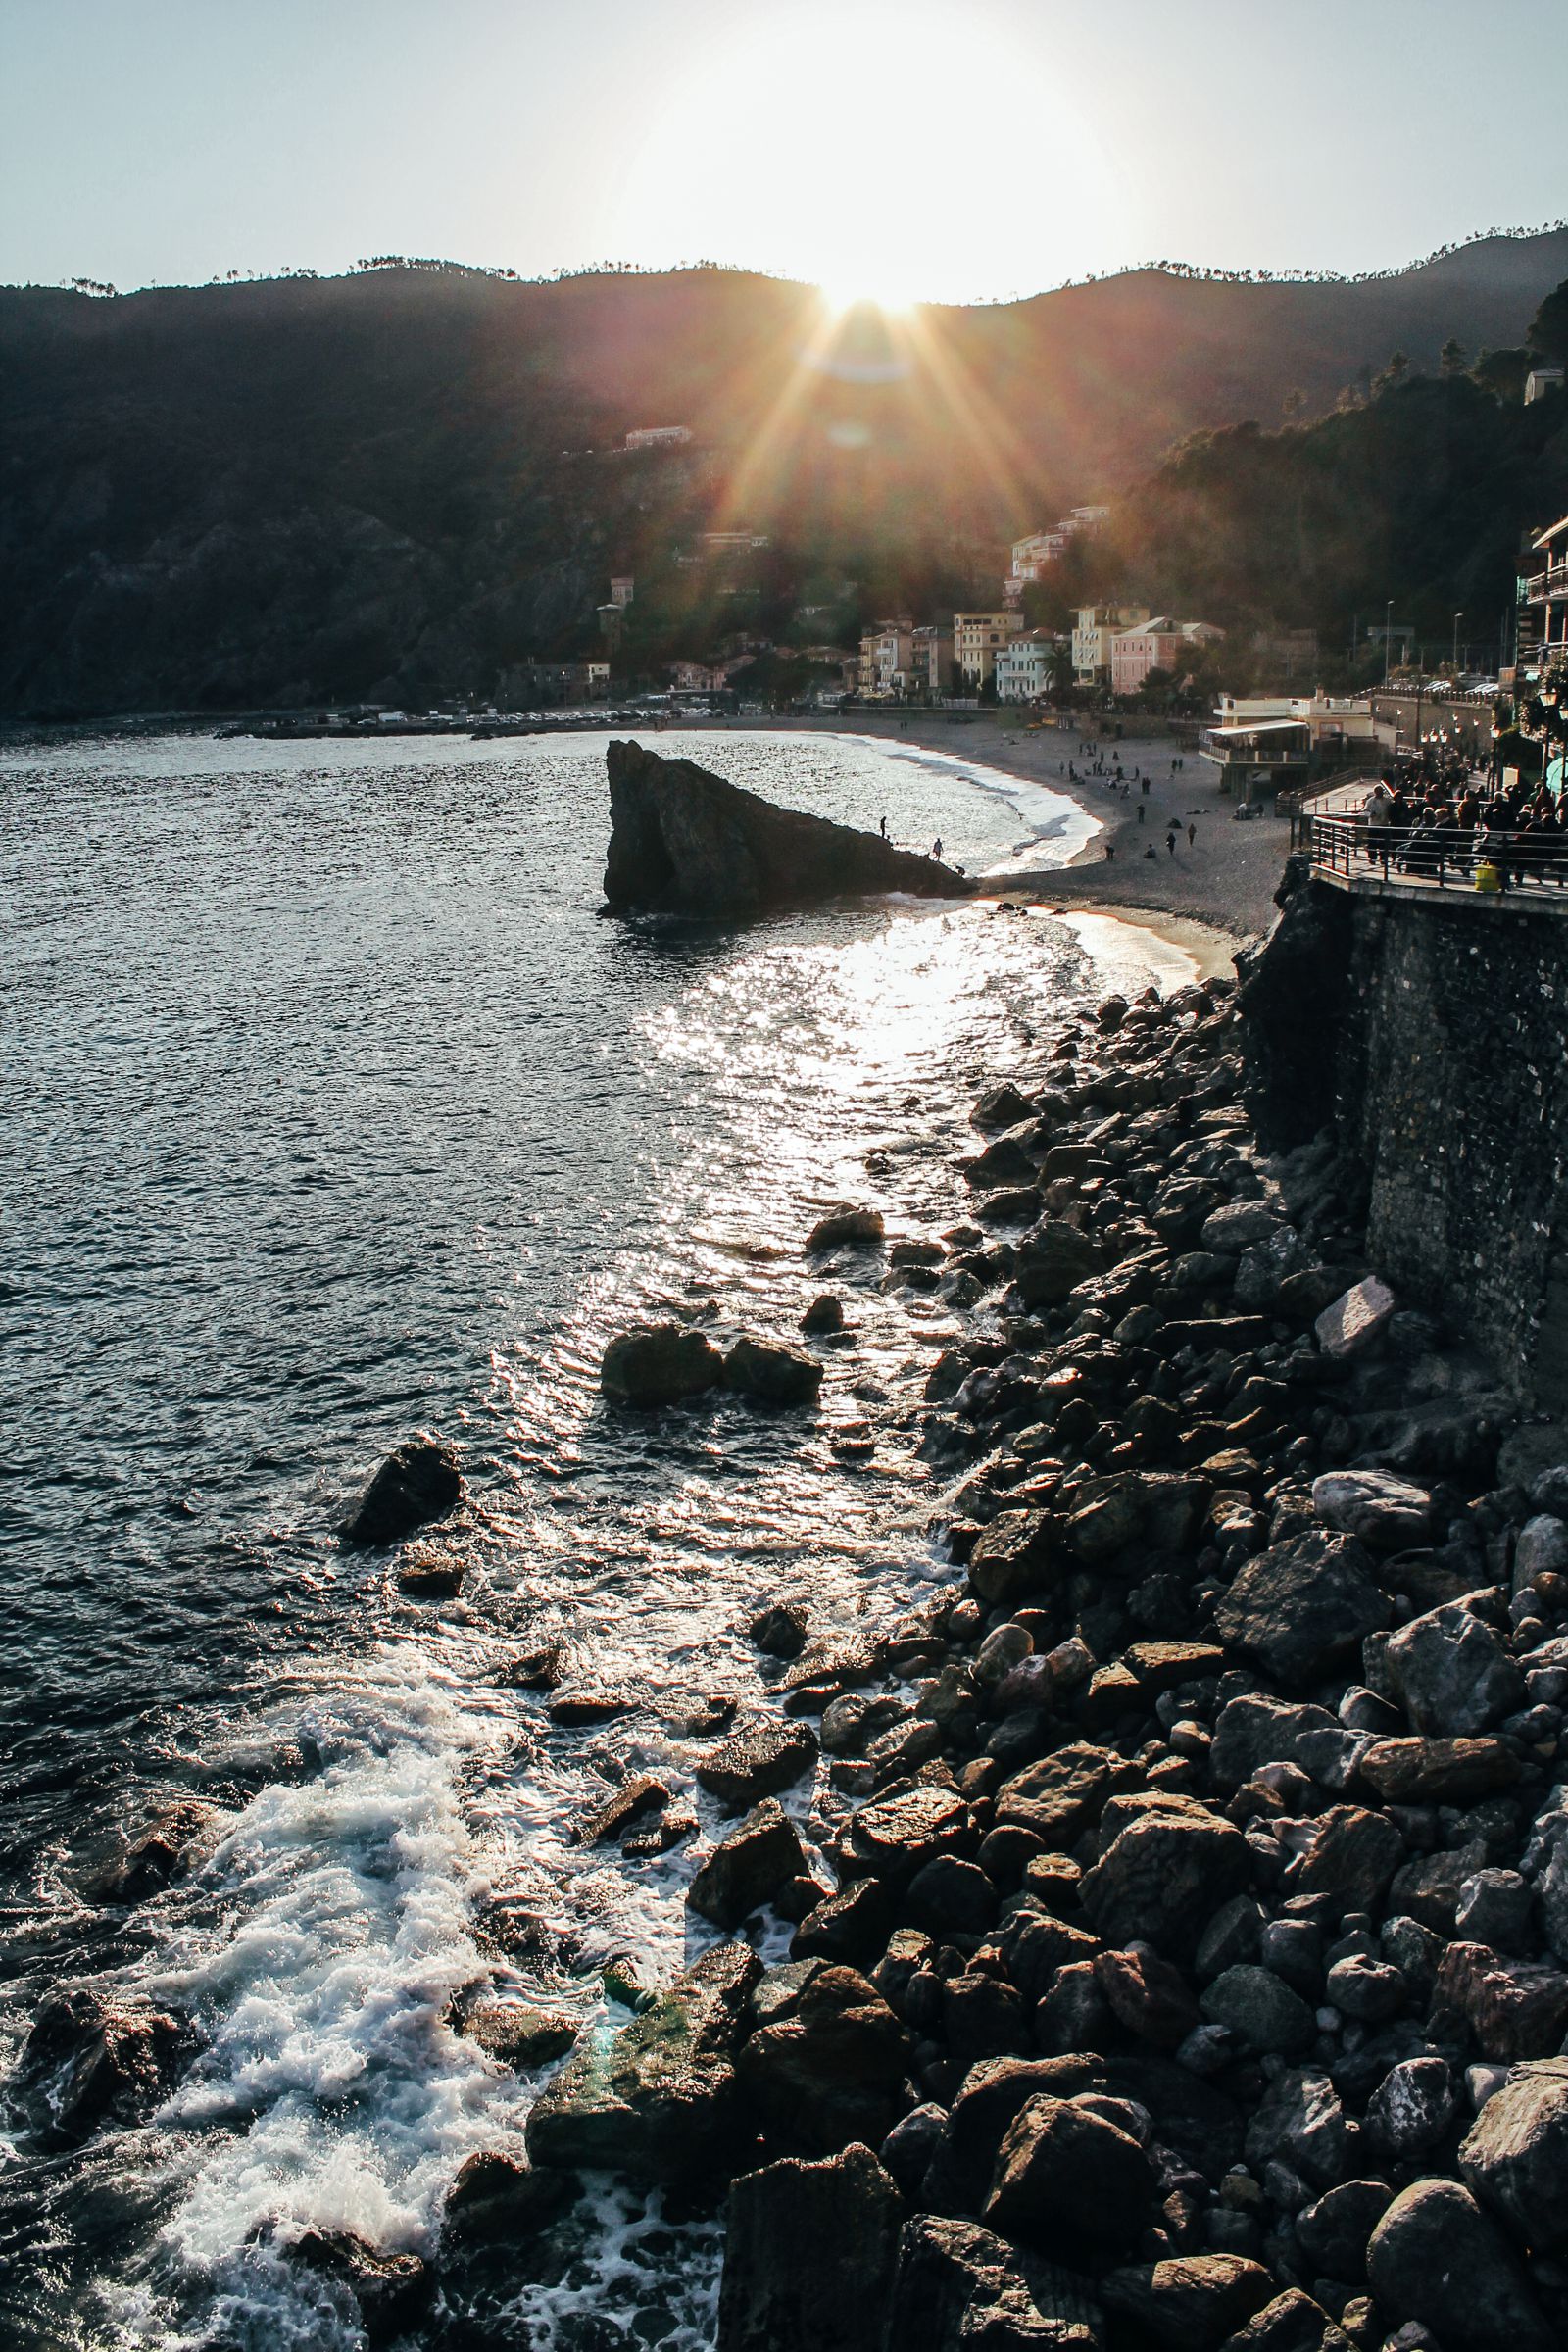 Monterosso al Mare in Cinque Terre, Italy - The Photo Diary! [5 of 5] (9)